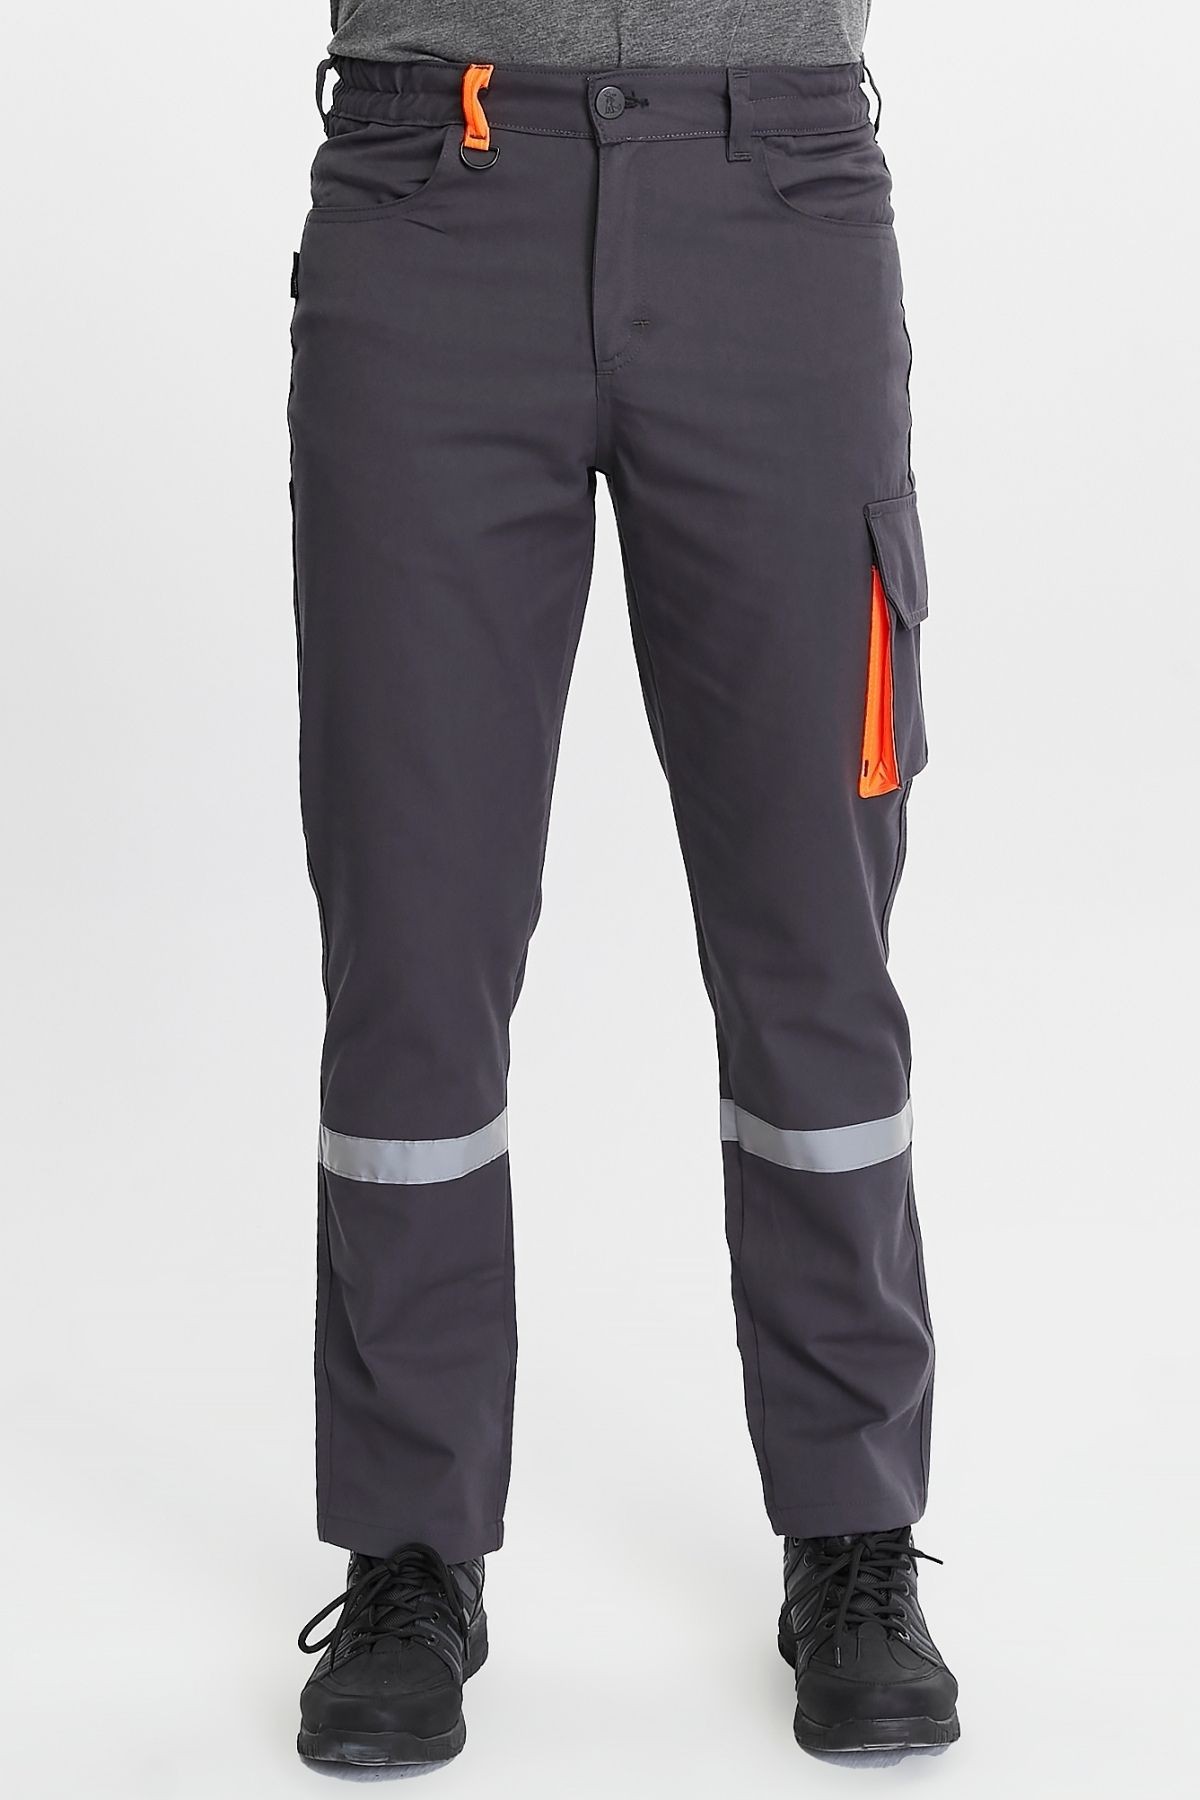 Uniprom İş Pantolonu Harman Kumaş Klasik Model Koyu Gri Kargo Pantolon Yazlık